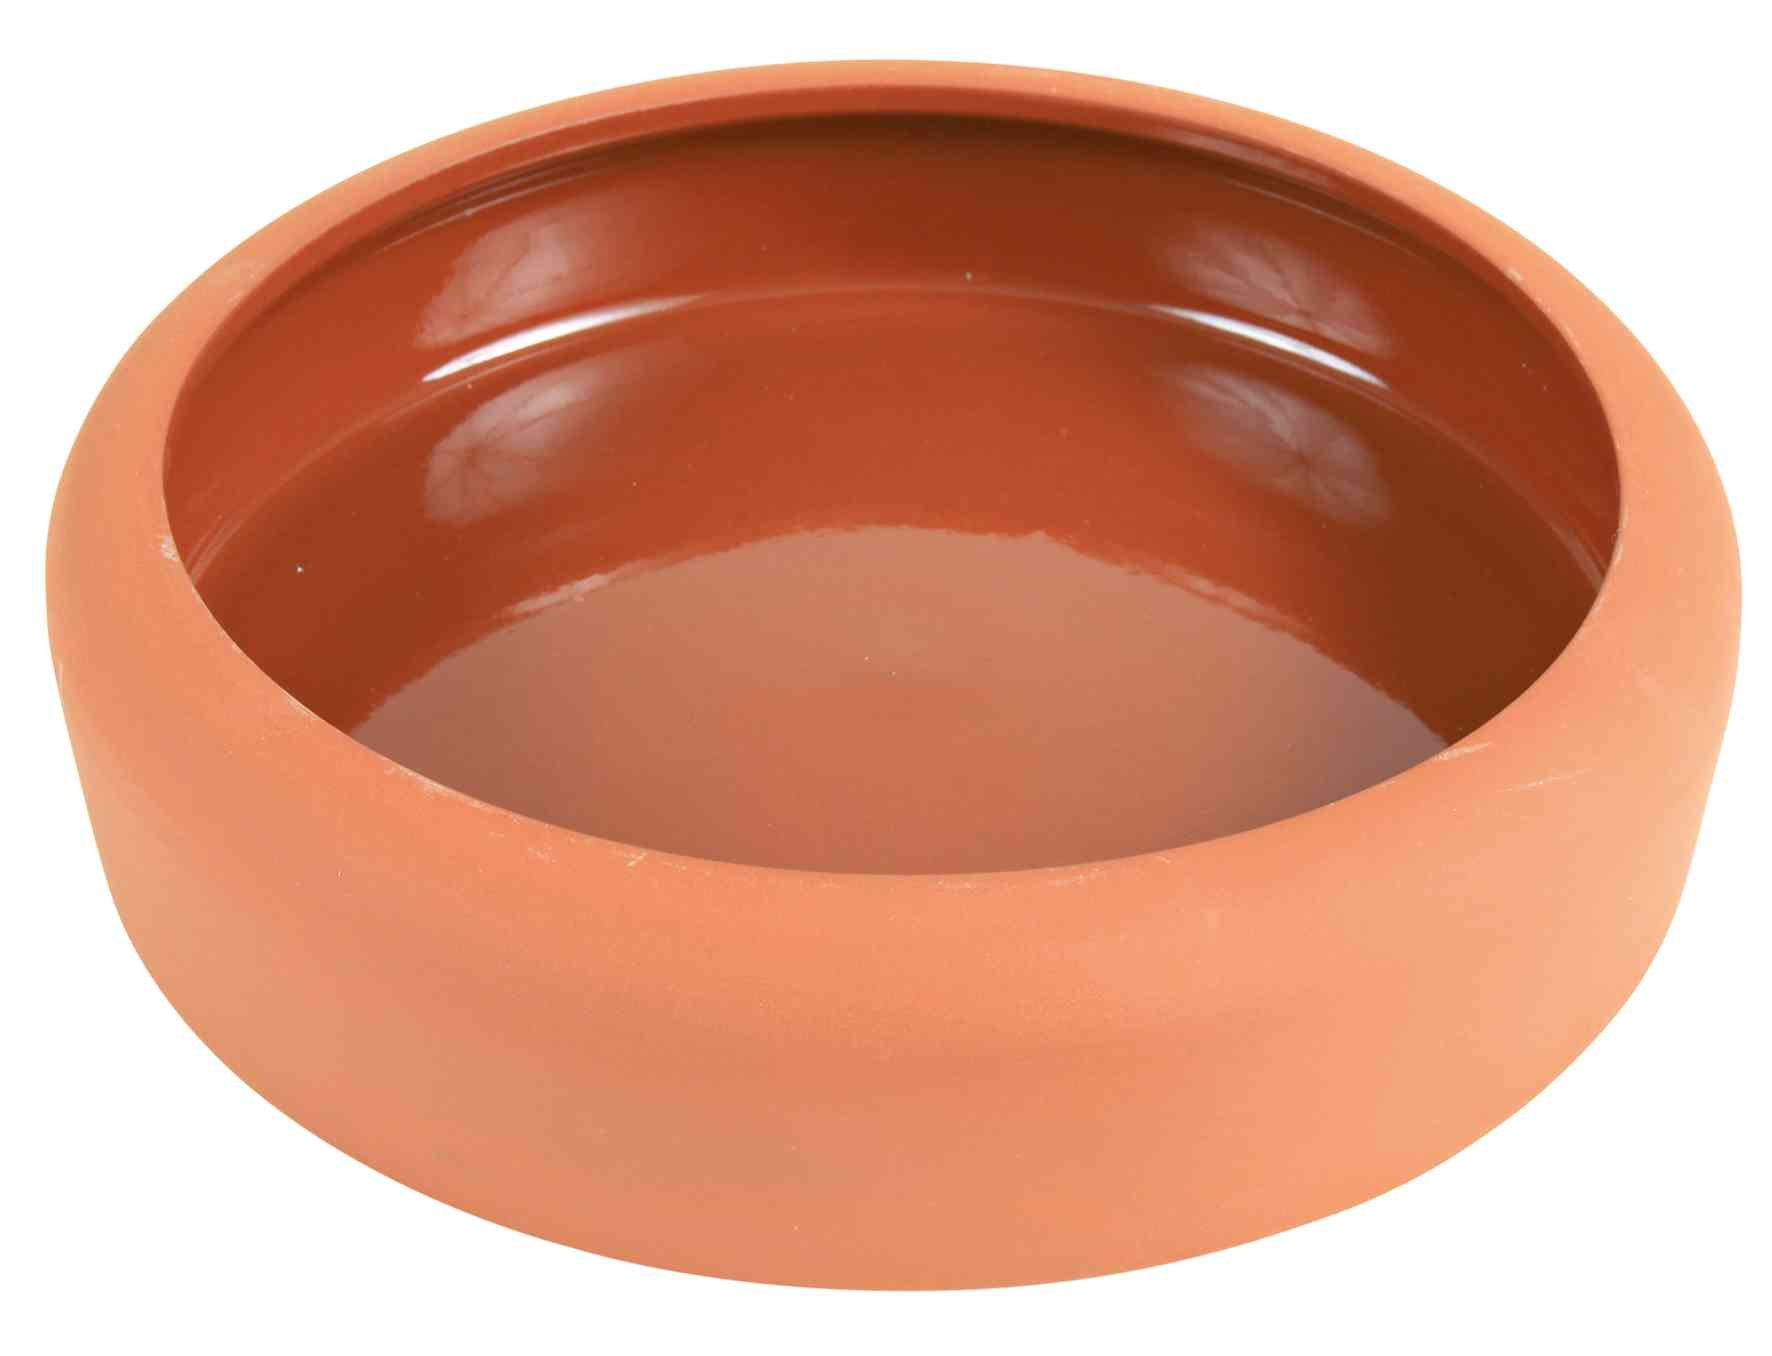 Comedero de cerámica sencillo 